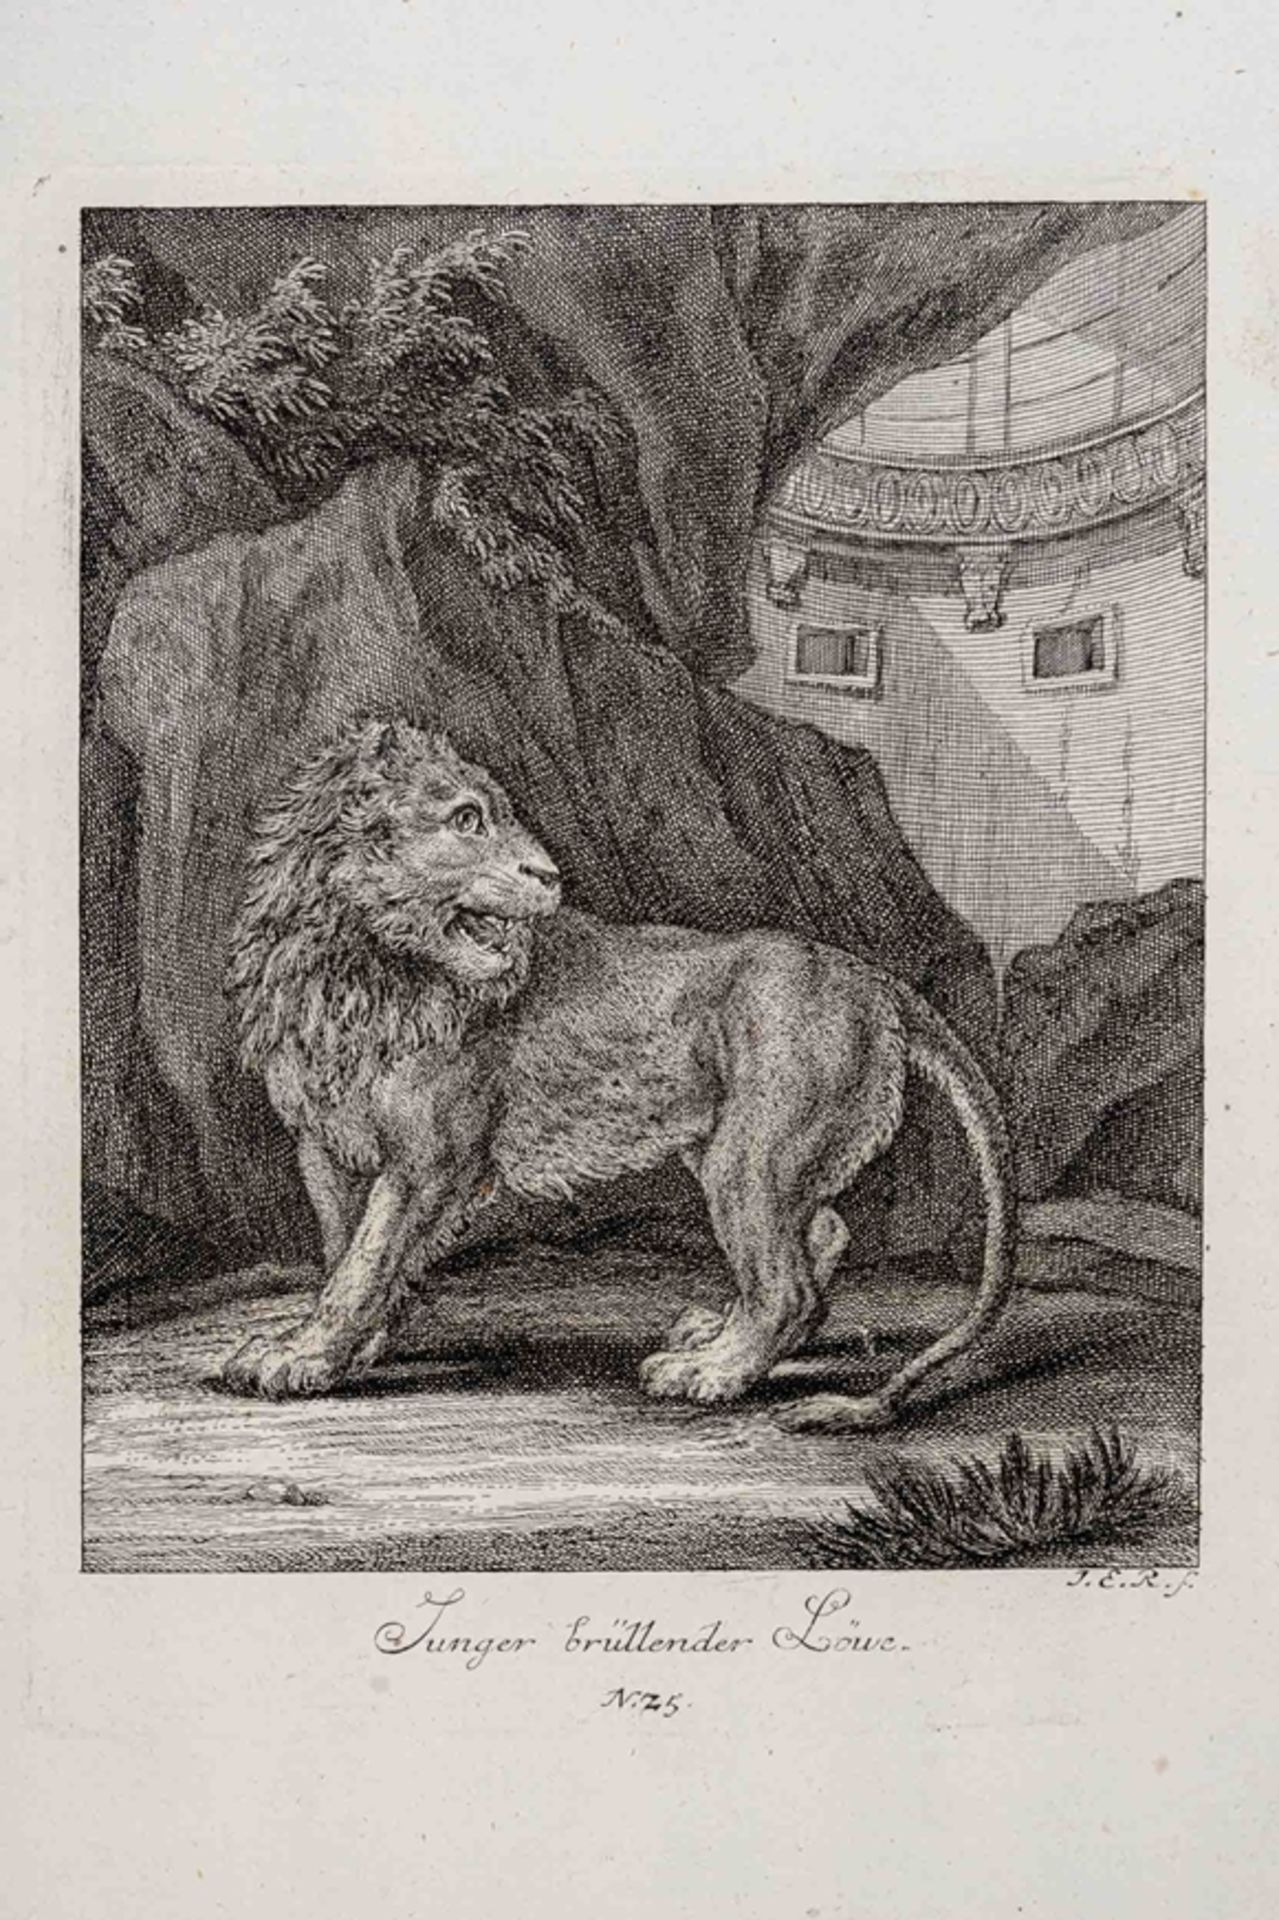 15 tlg. Konvolut "Wilder Tiere", z.B. Löwe, Tiger, Luchs, Auerochse etc., originale Kupferstiche de - Image 5 of 5